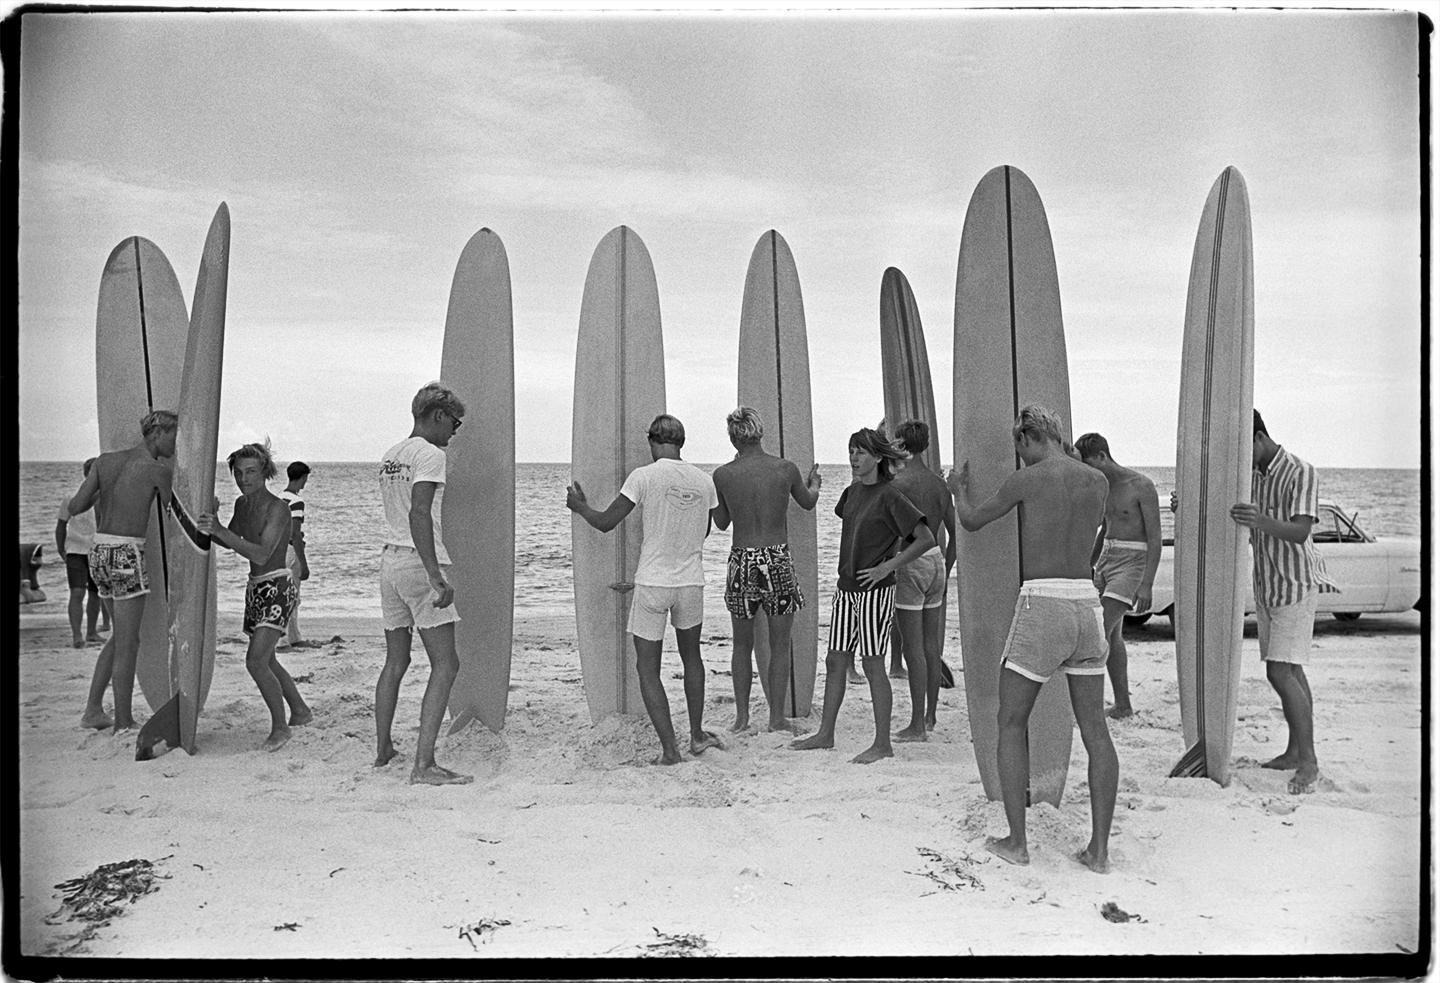 Surfboards in the Sand von Al Satterwhite ist ein 16 x 20 Zoll großer, archivierter Pigmentdruck, der in einer Auflage von 25 Stück erhältlich ist. Dieses Foto zeigt eine Gruppe Jugendlicher mit ihren Surfbrettern im Sand, die darauf warten, ins